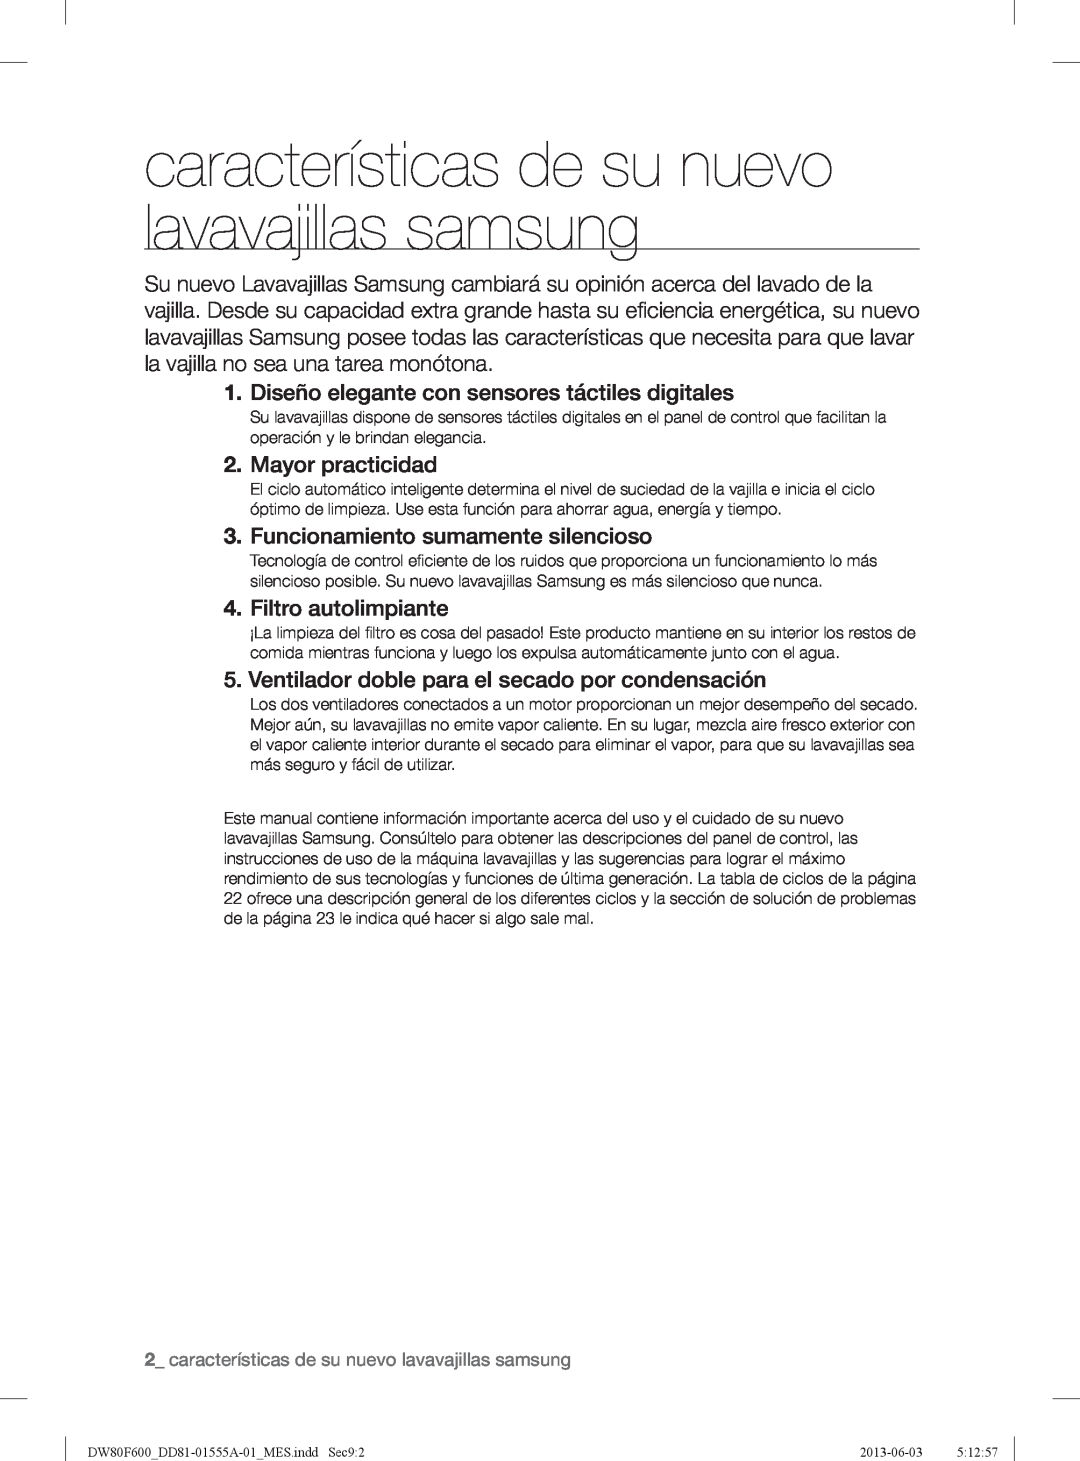 Samsung DW80F600UTW características de su nuevo lavavajillas samsung, Diseño elegante con sensores táctiles digitales 